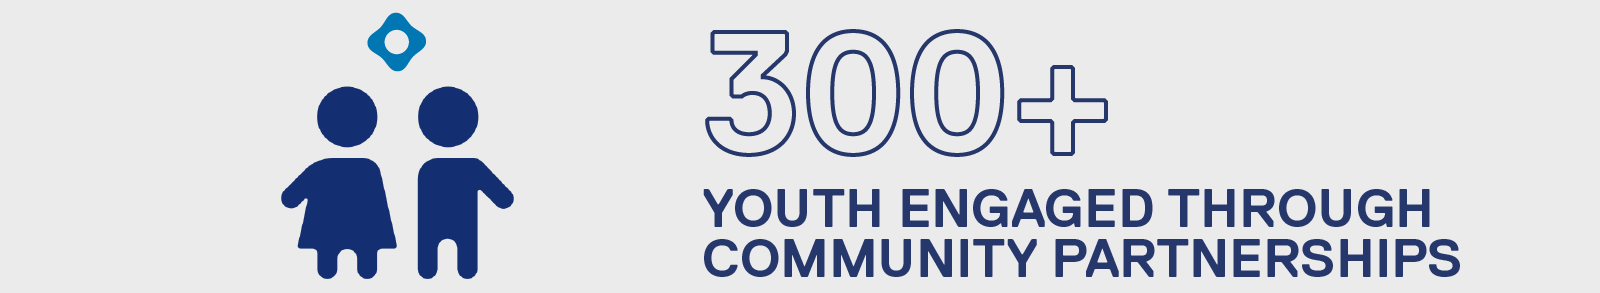 300 plus youth engaged through community partnerships